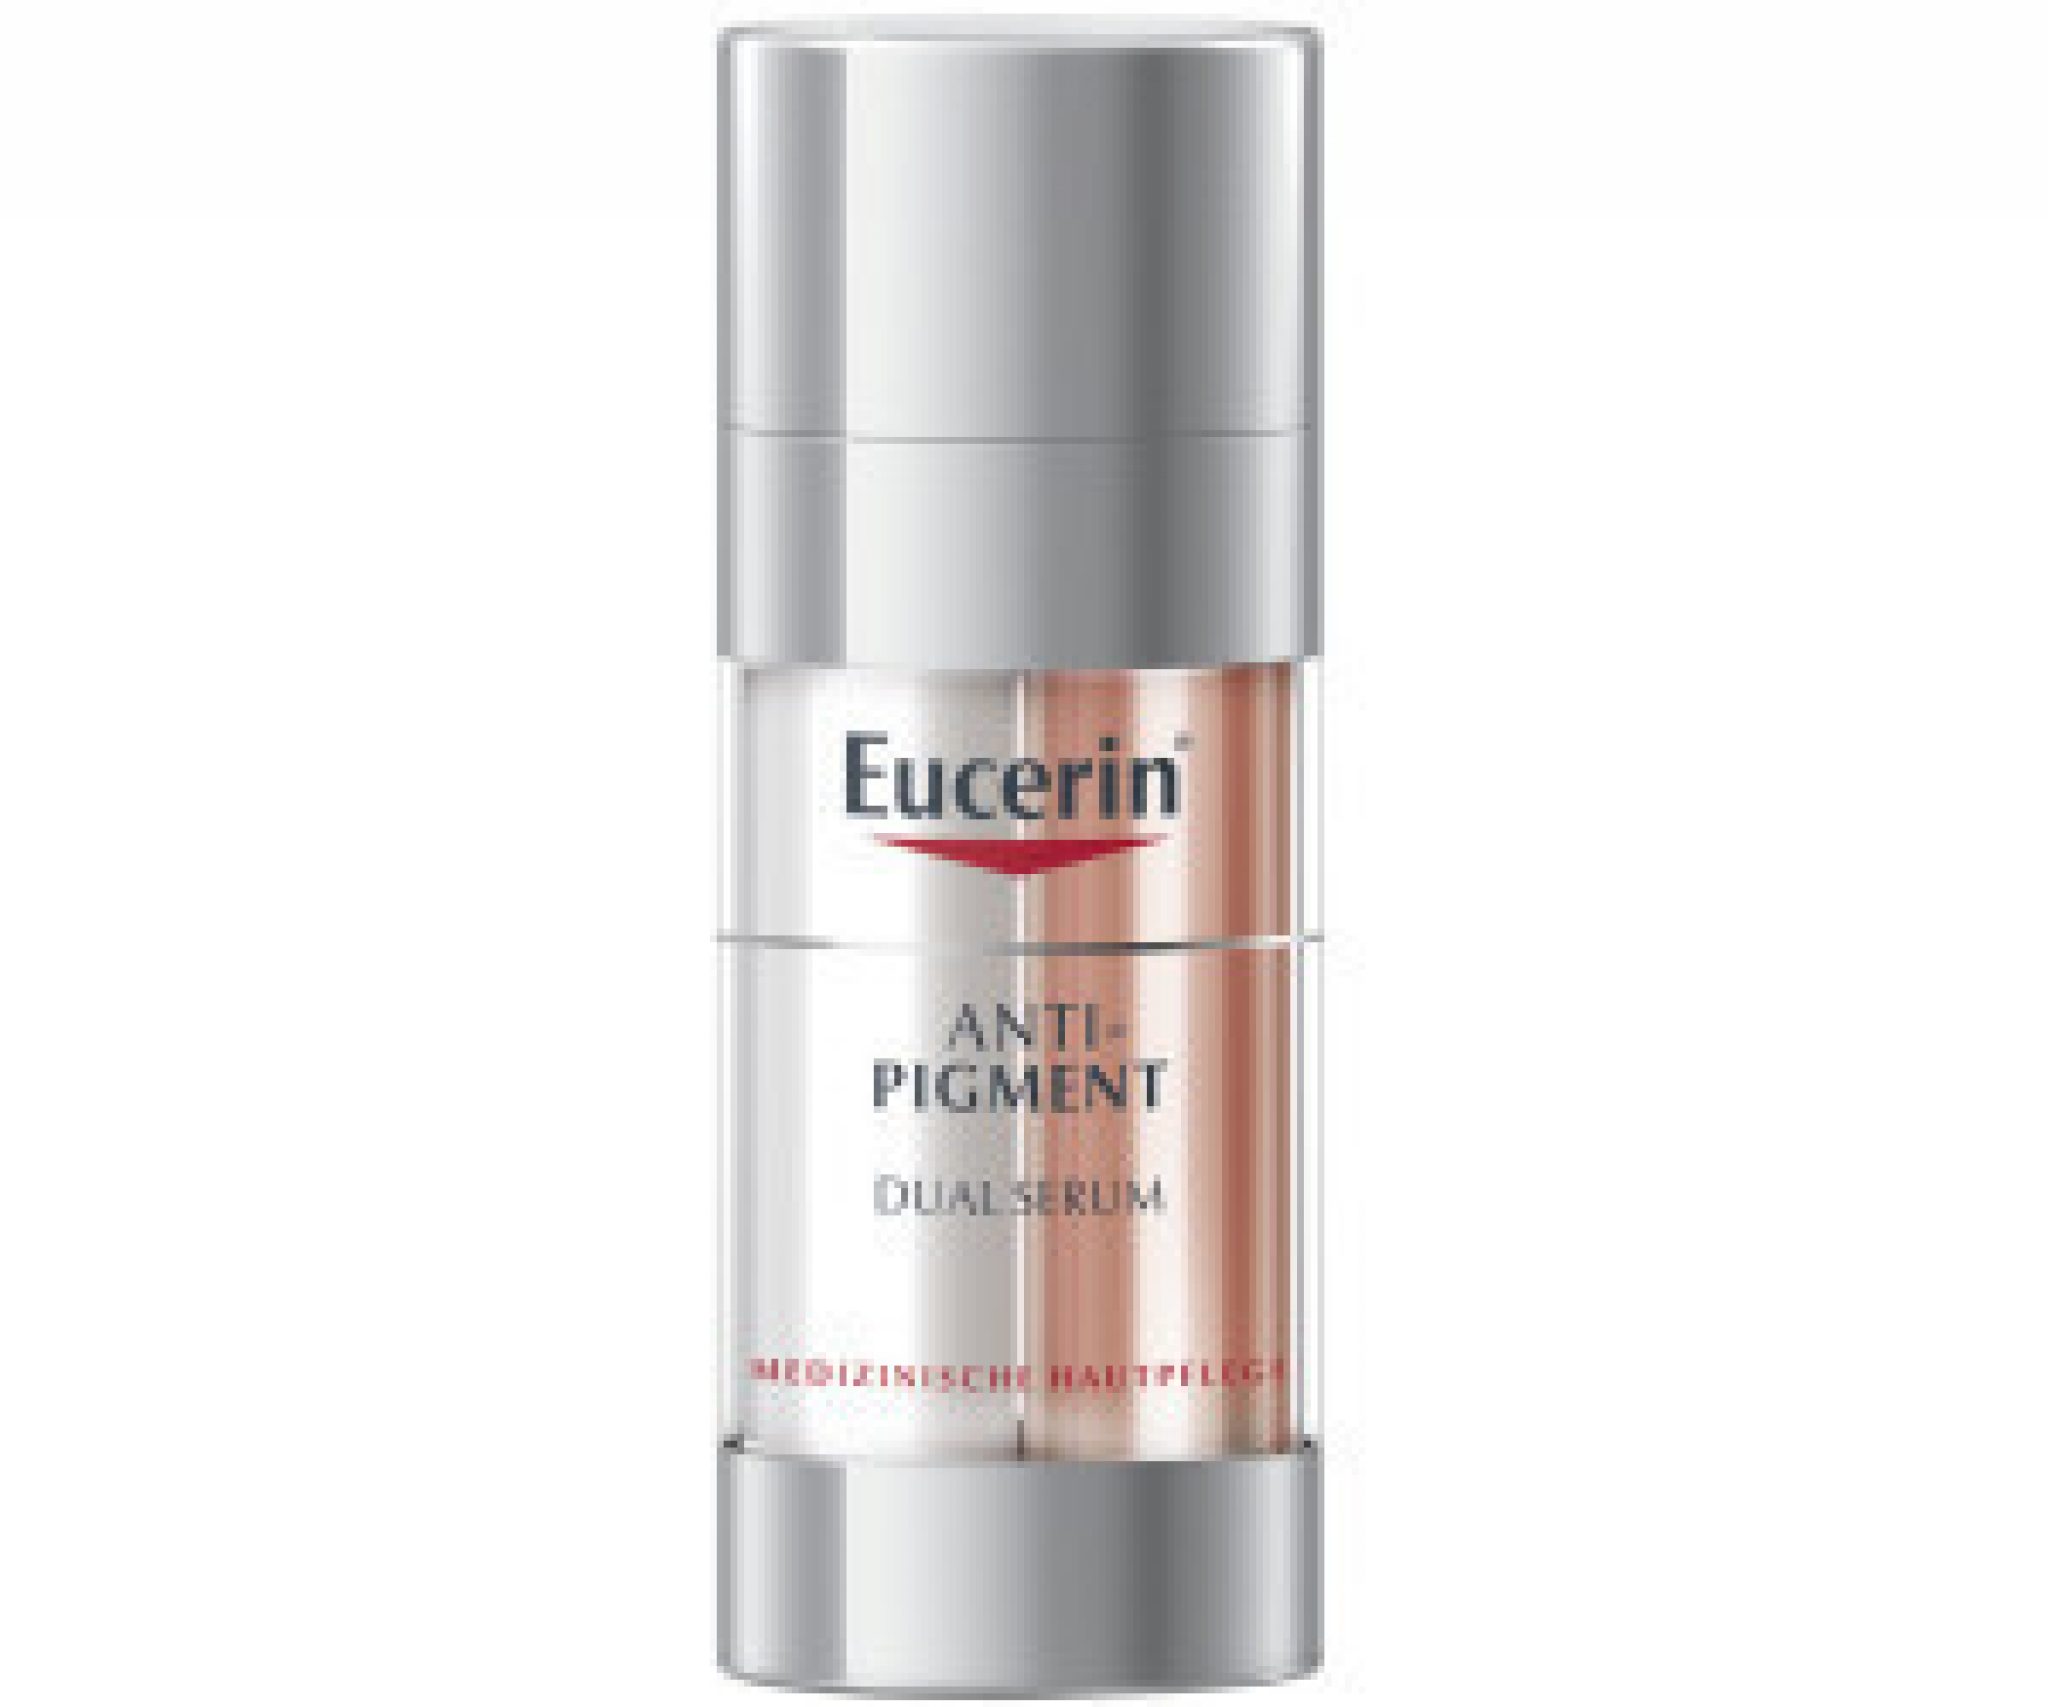 eucerin-anti-pigment-dual-serum-test-ConvertImage